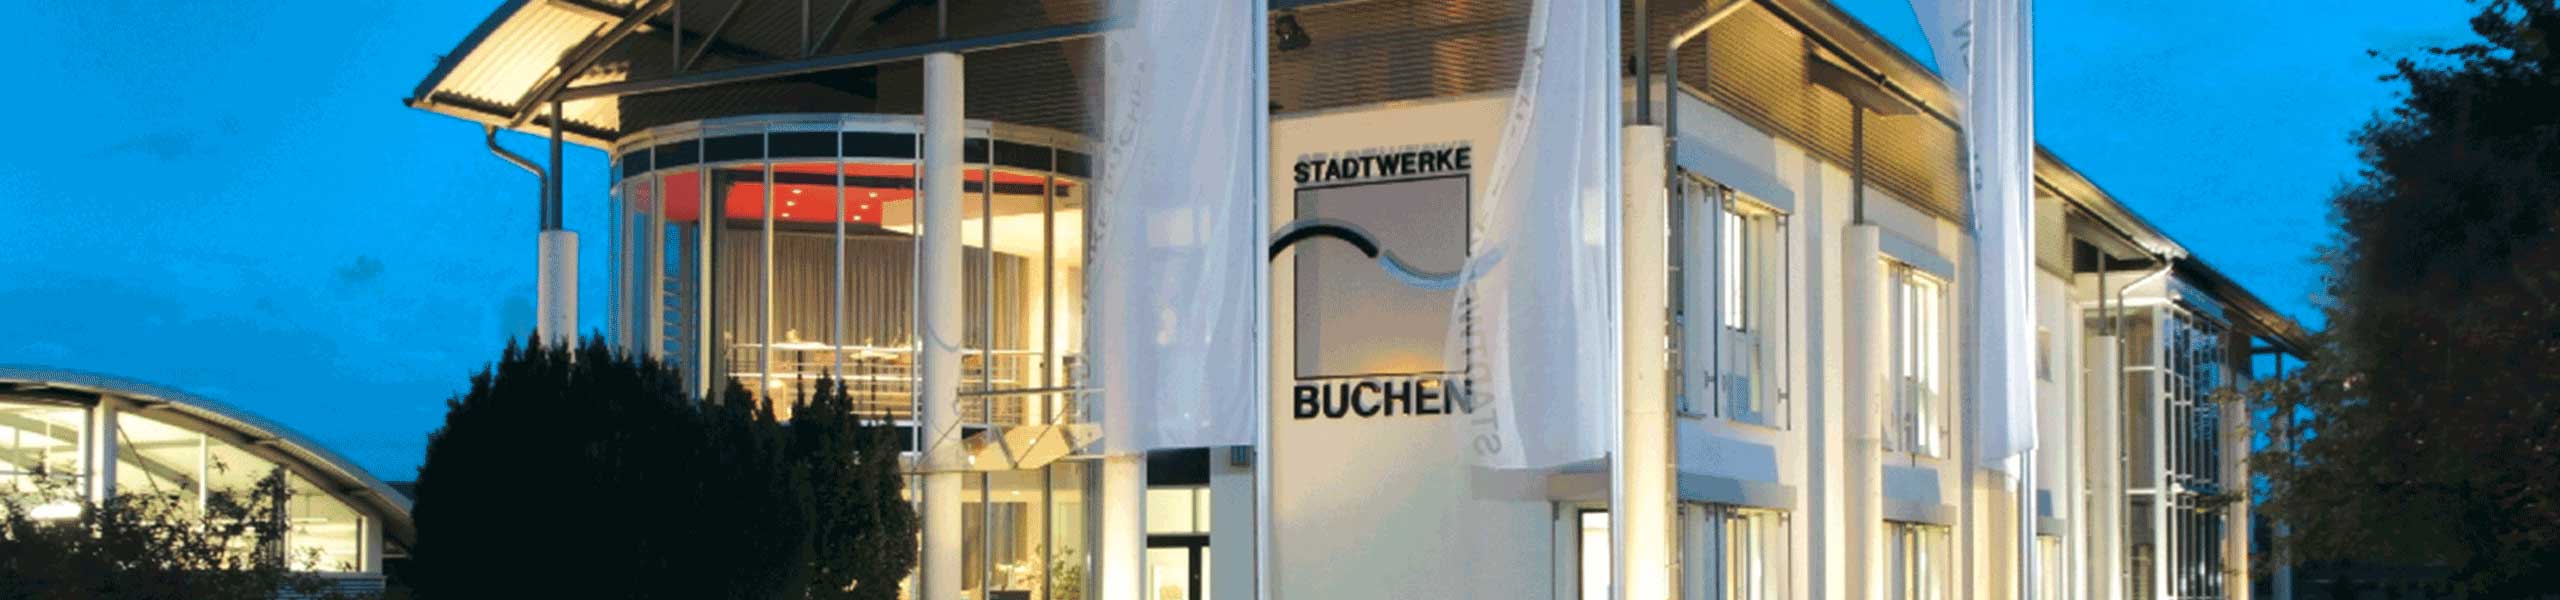 Stadtwerke Buchen GmbH & Co KG - Meister (m/w/d) Elektrotechnik